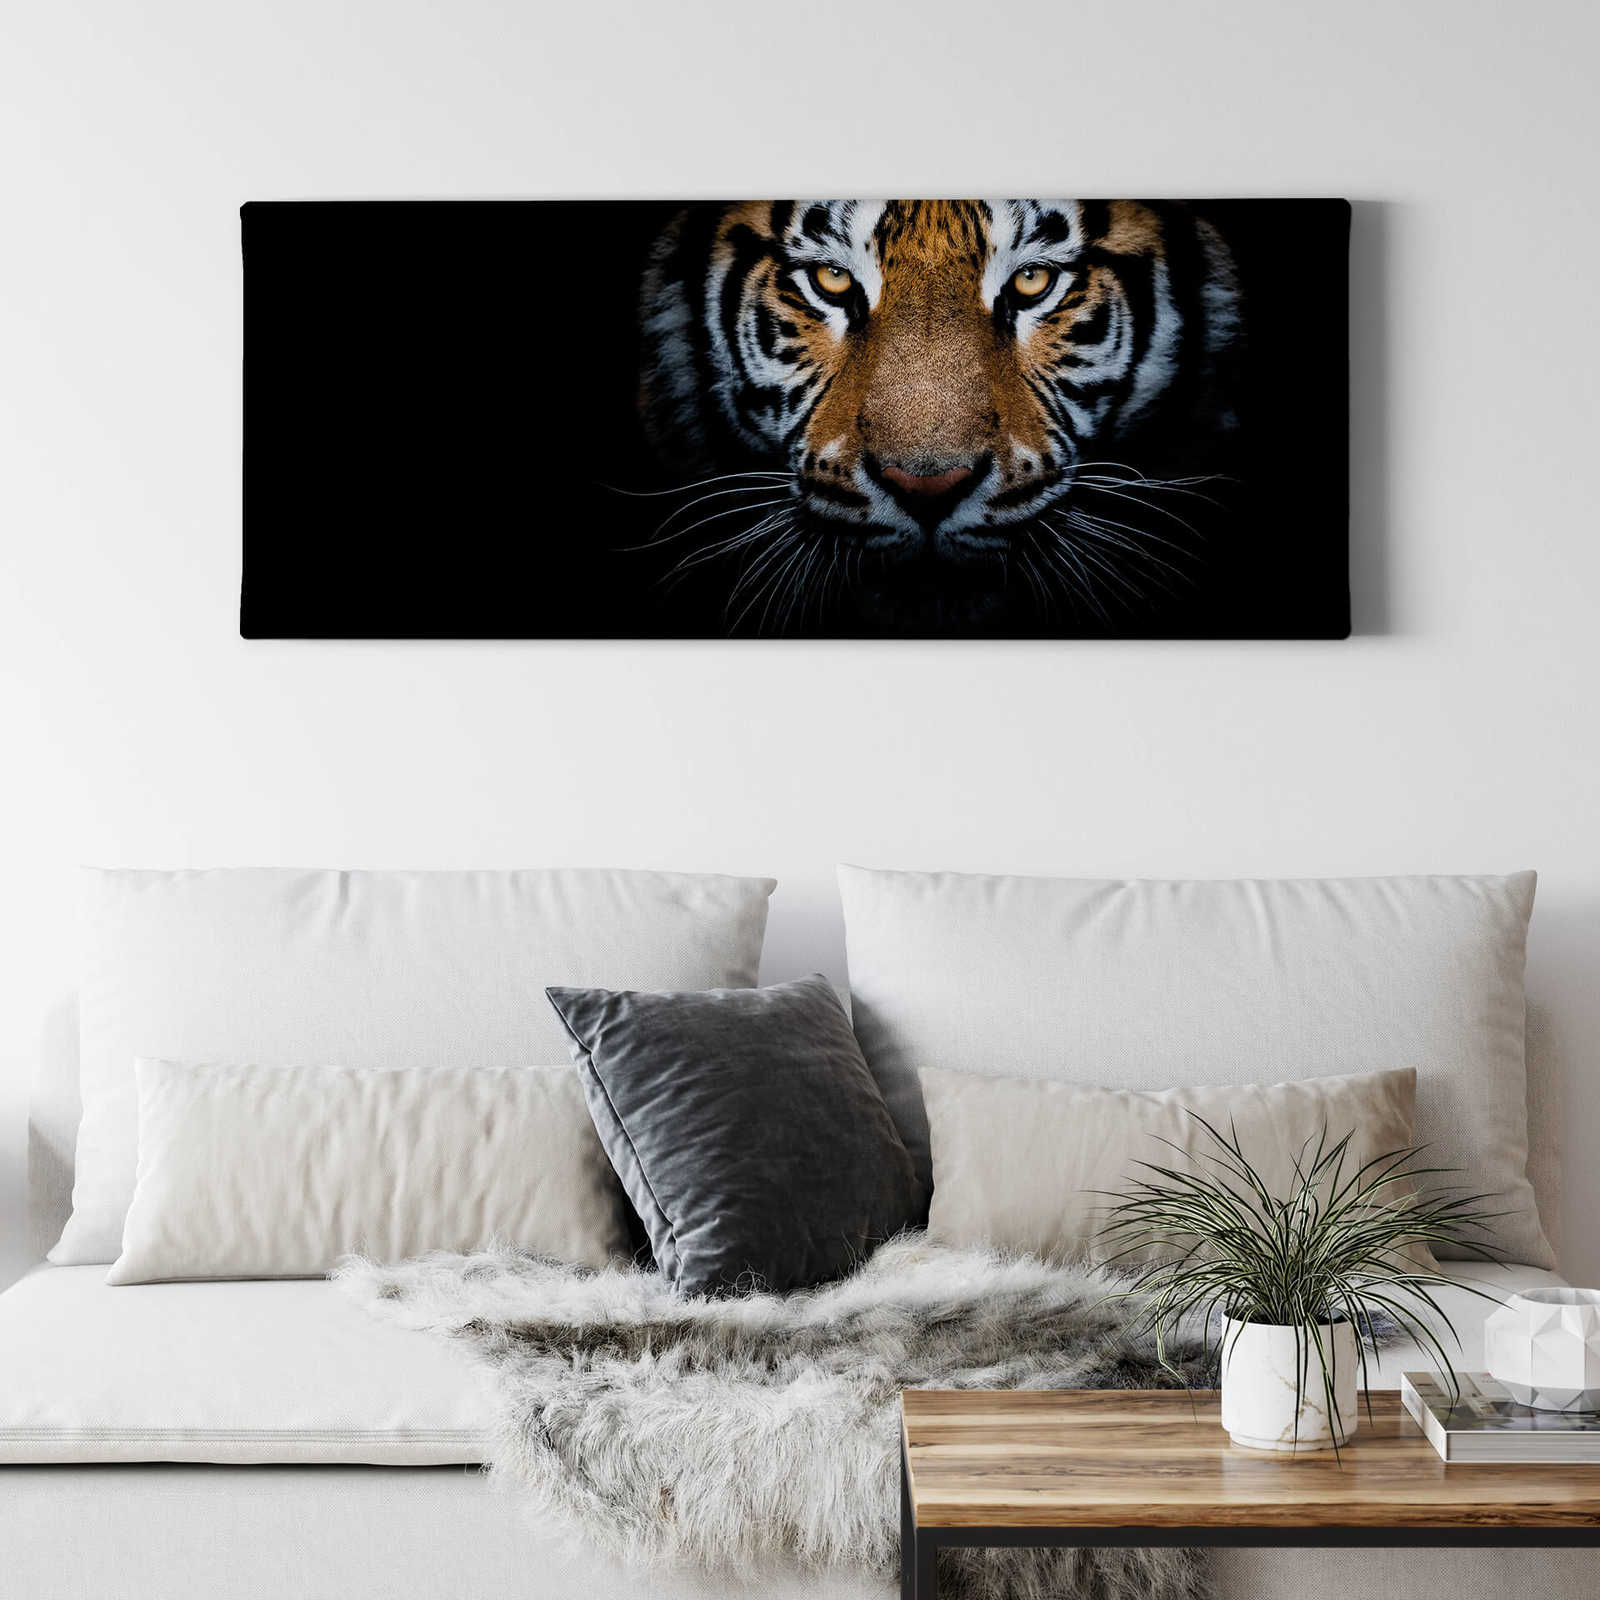             Panorama Canvas Schilderij met tijger in de natuur - 1.00 m x 0.40 m
        